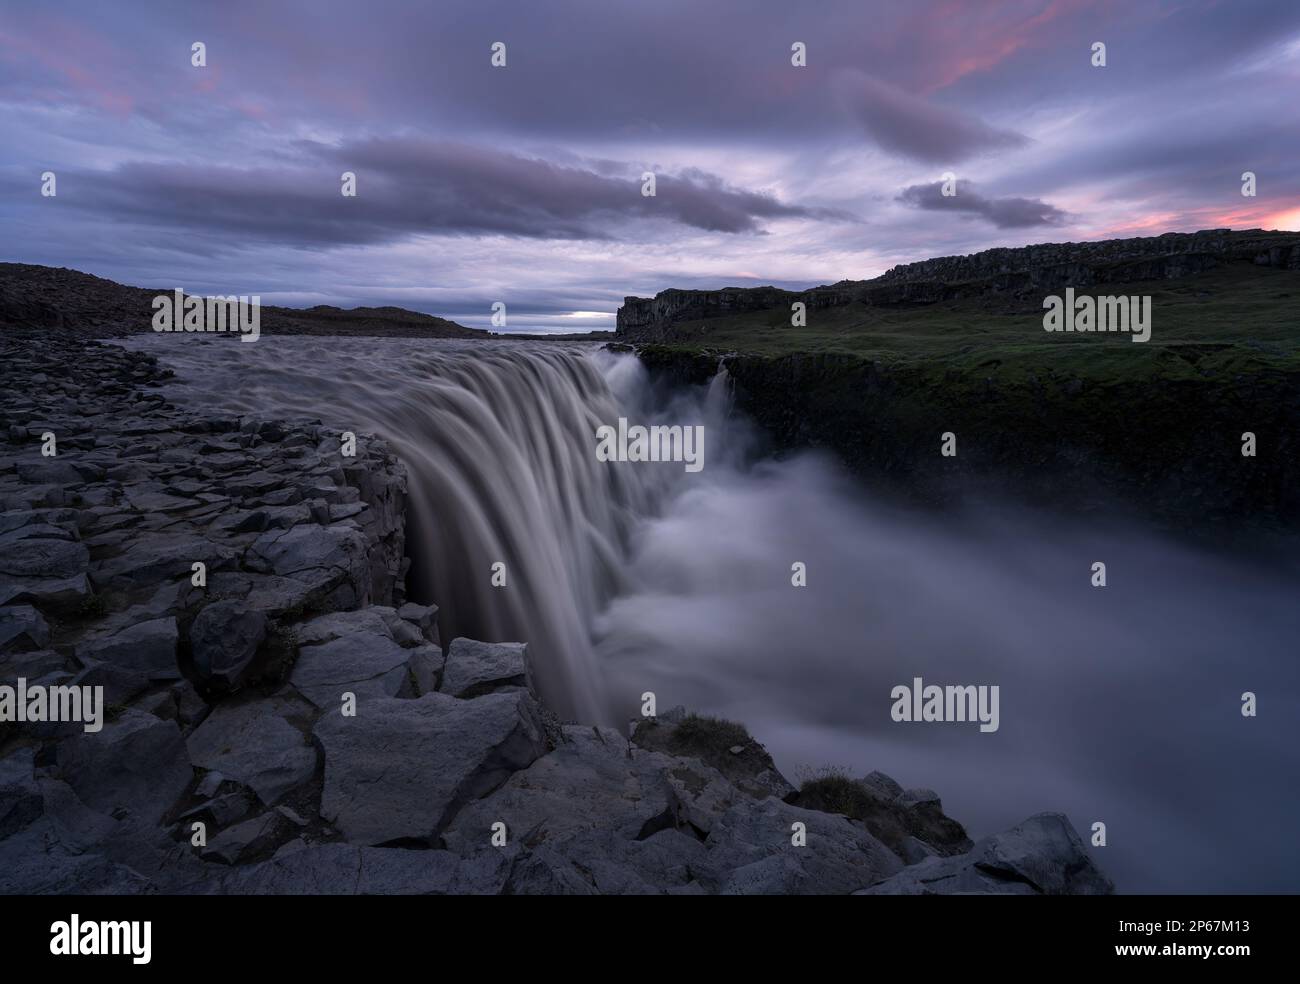 Dettifoss Wasserfall in einem nördlichen Teil Islands, das Land des Eisens und Feuers, Island, Polarregionen Stockfoto